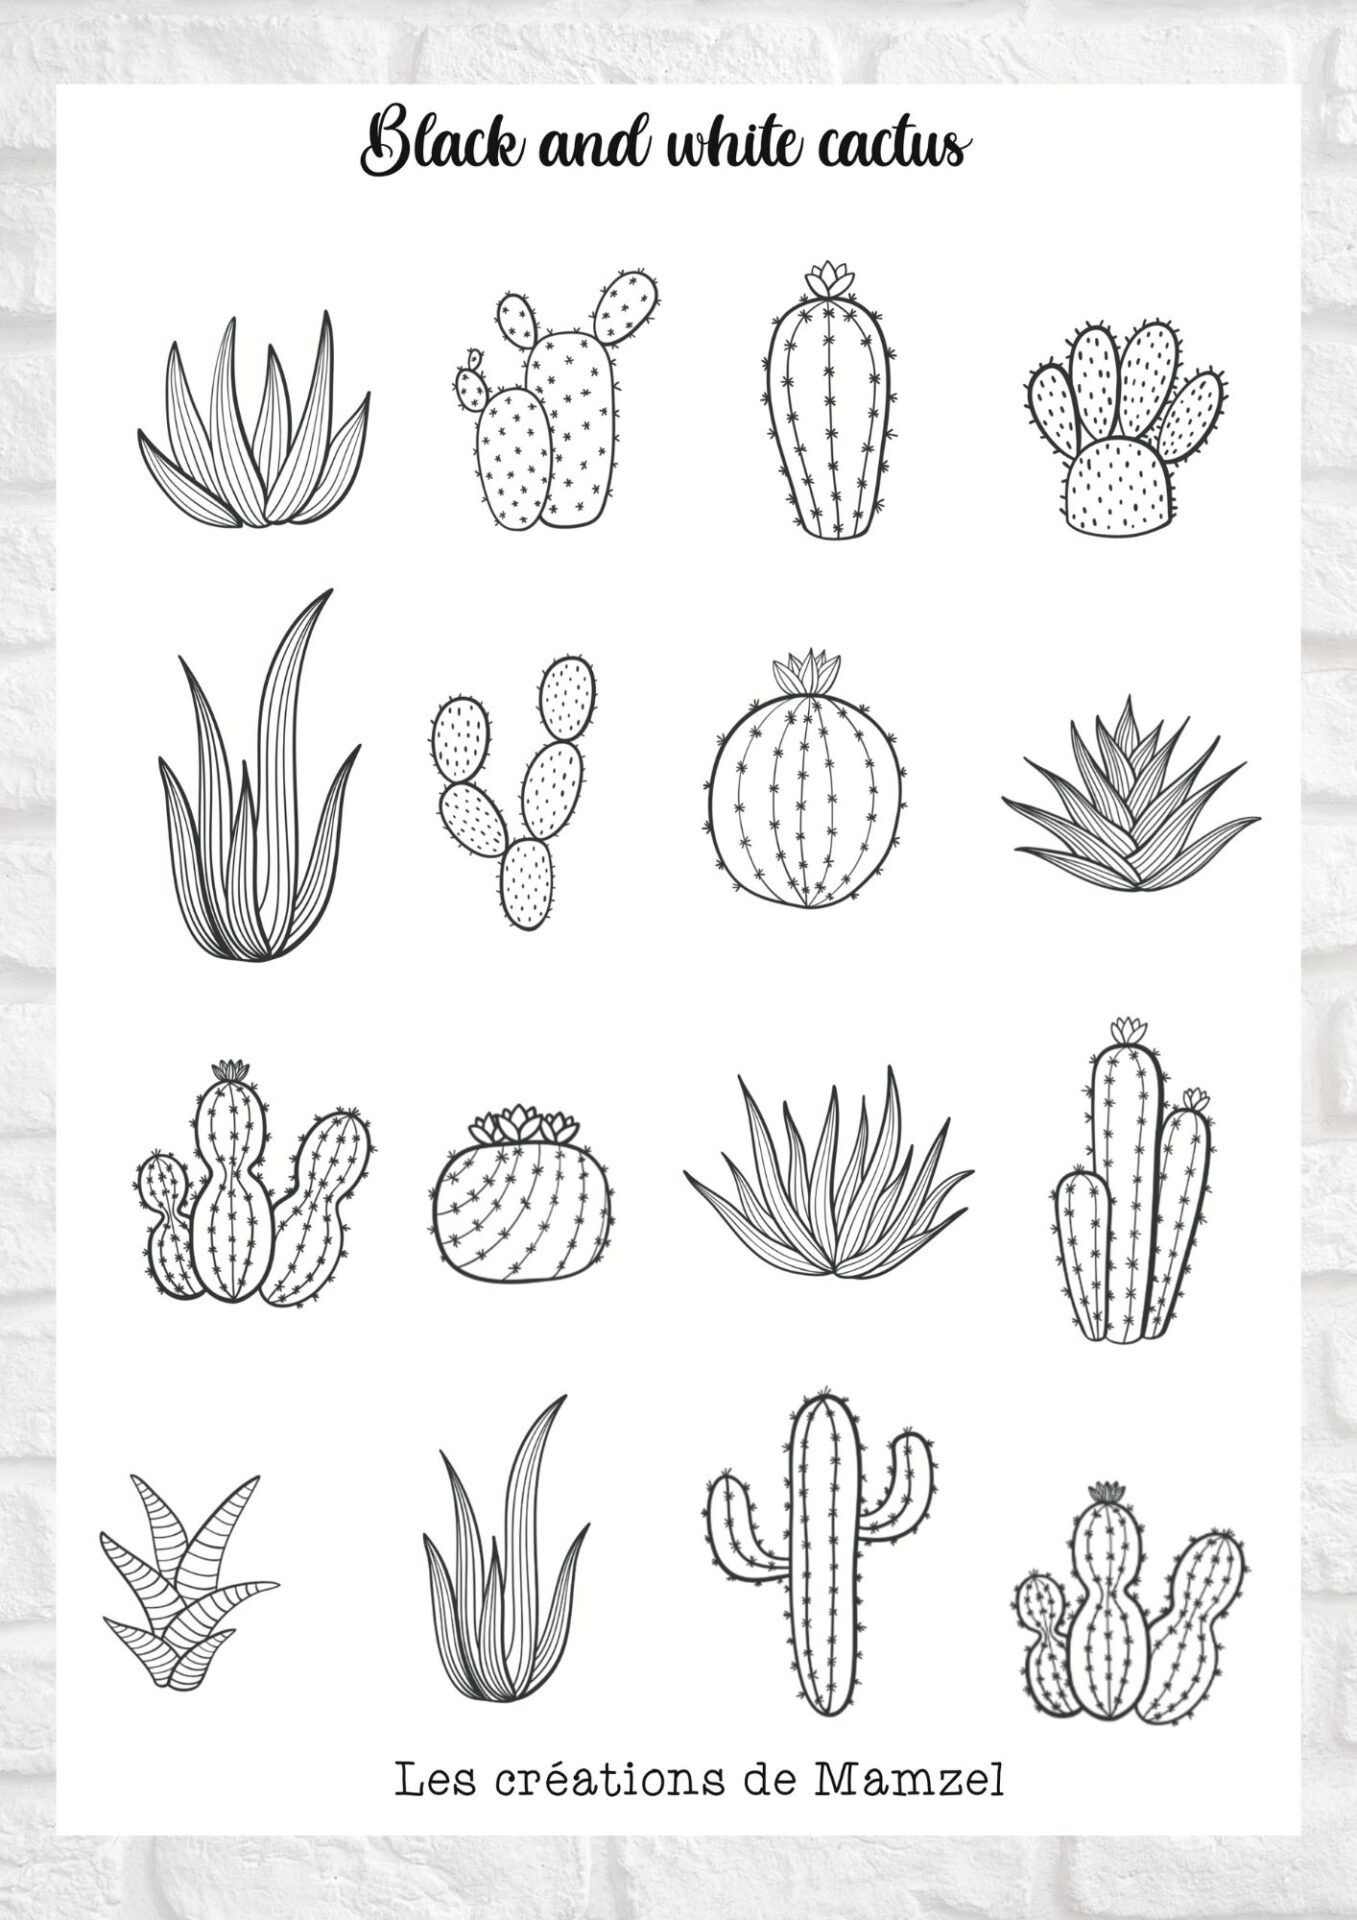 Vente planche de stickers pour enfants / ados - Boutique en ligne - Création française - Black and white cactus